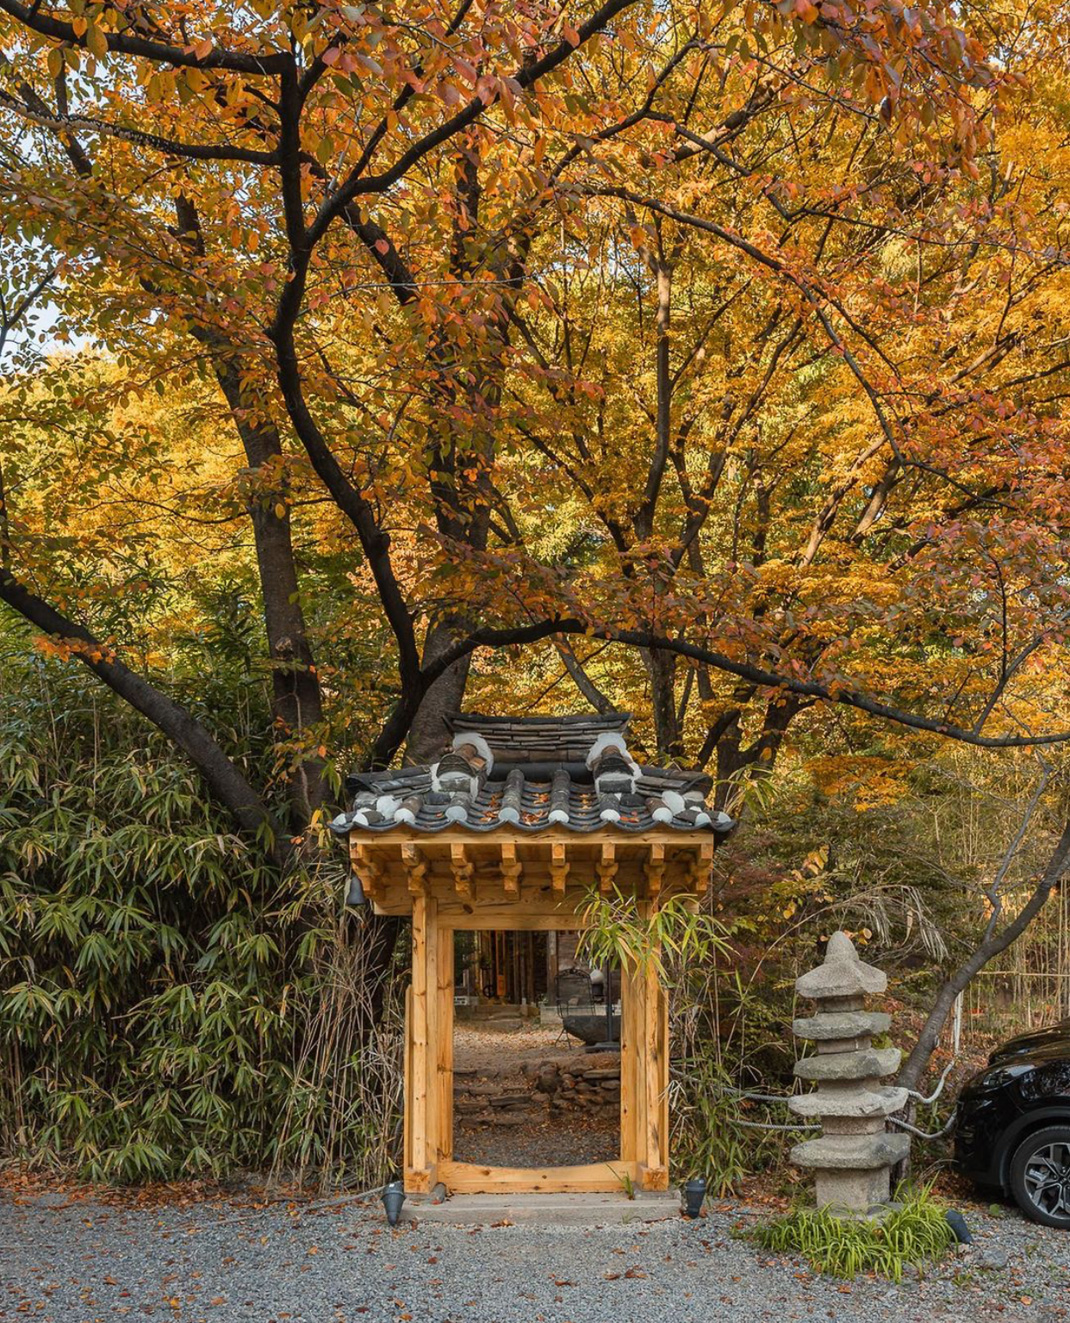 一家位于森林中的茶馆 韩国 首尔 茶馆 庭院 古建筑 logo设计 vi设计 空间设计